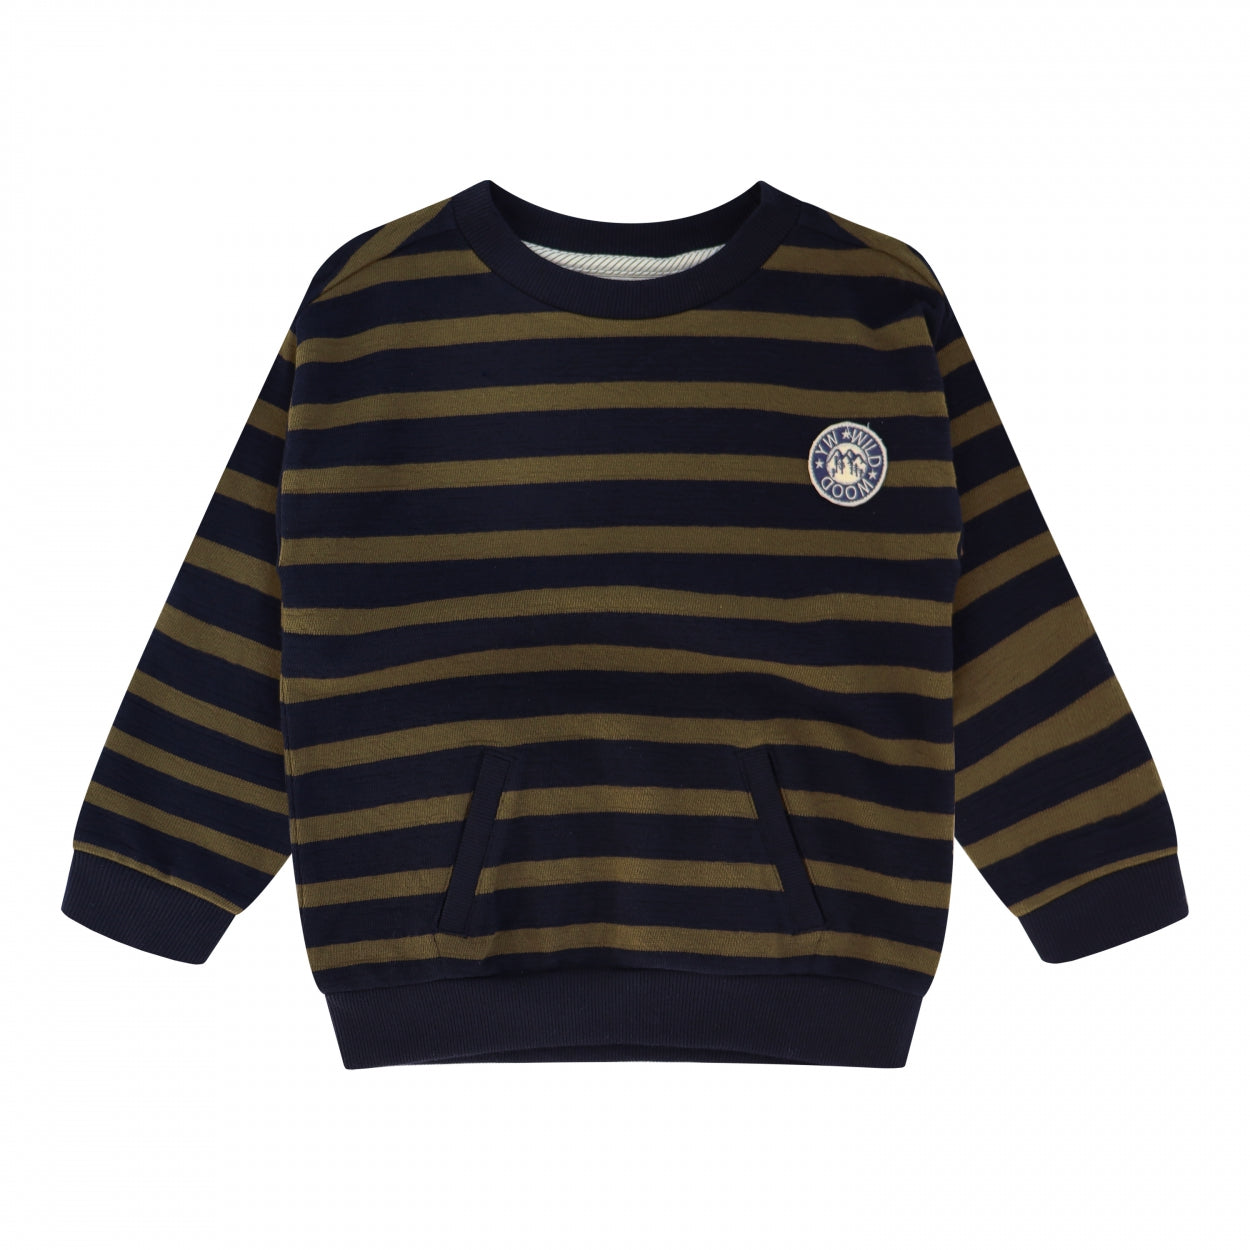 Jongens Sweater Tub | Gray van Your Wishes in de kleur Multicolor in maat 134-140.